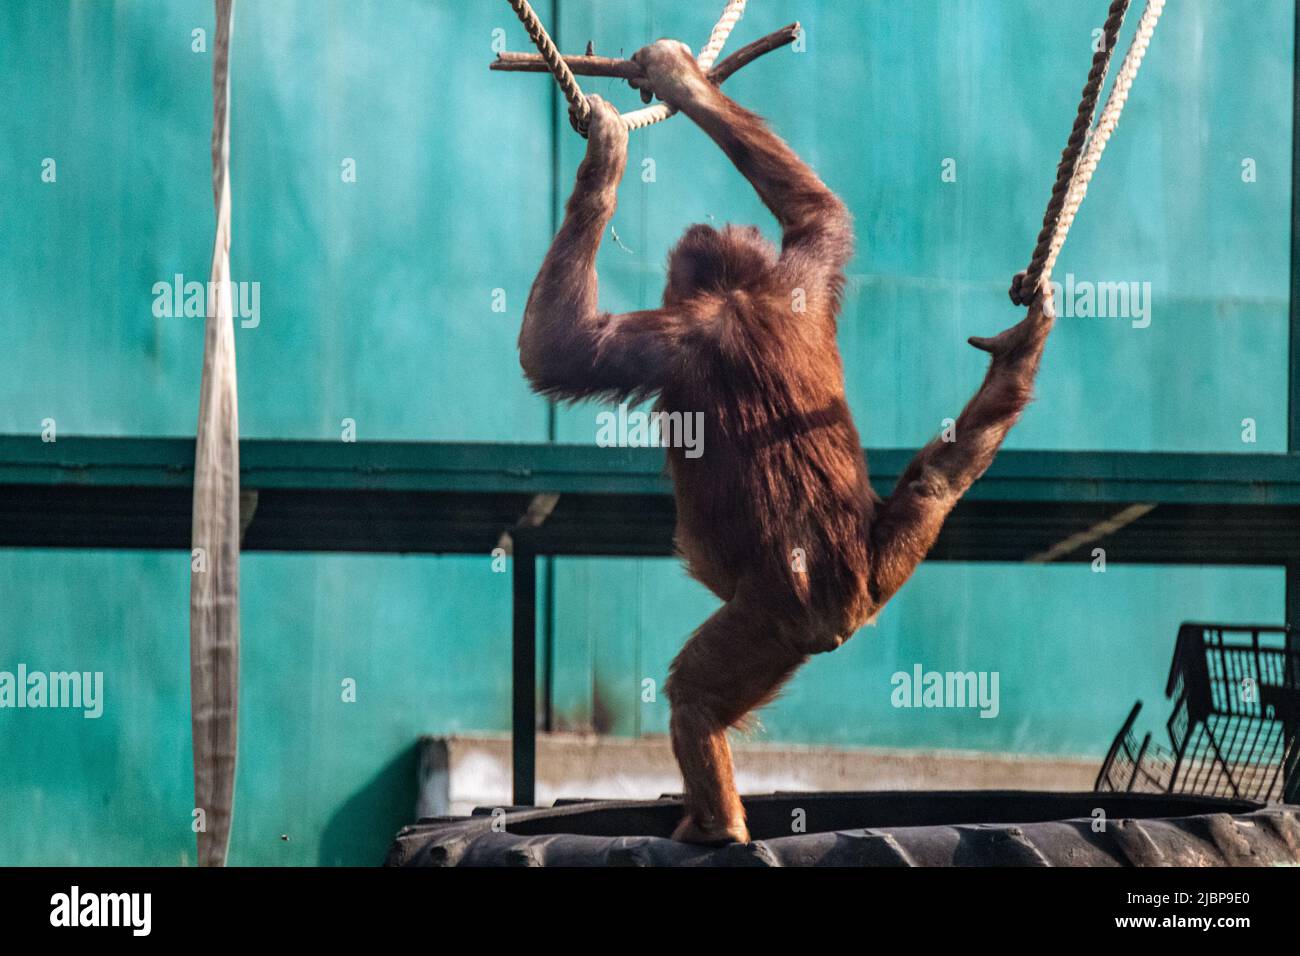 Enfant orangé de derrière jouant avec des cordes dans la volière du zoo. Singes animaux, plus grand mammifère arboricole à fourrure rouge Banque D'Images